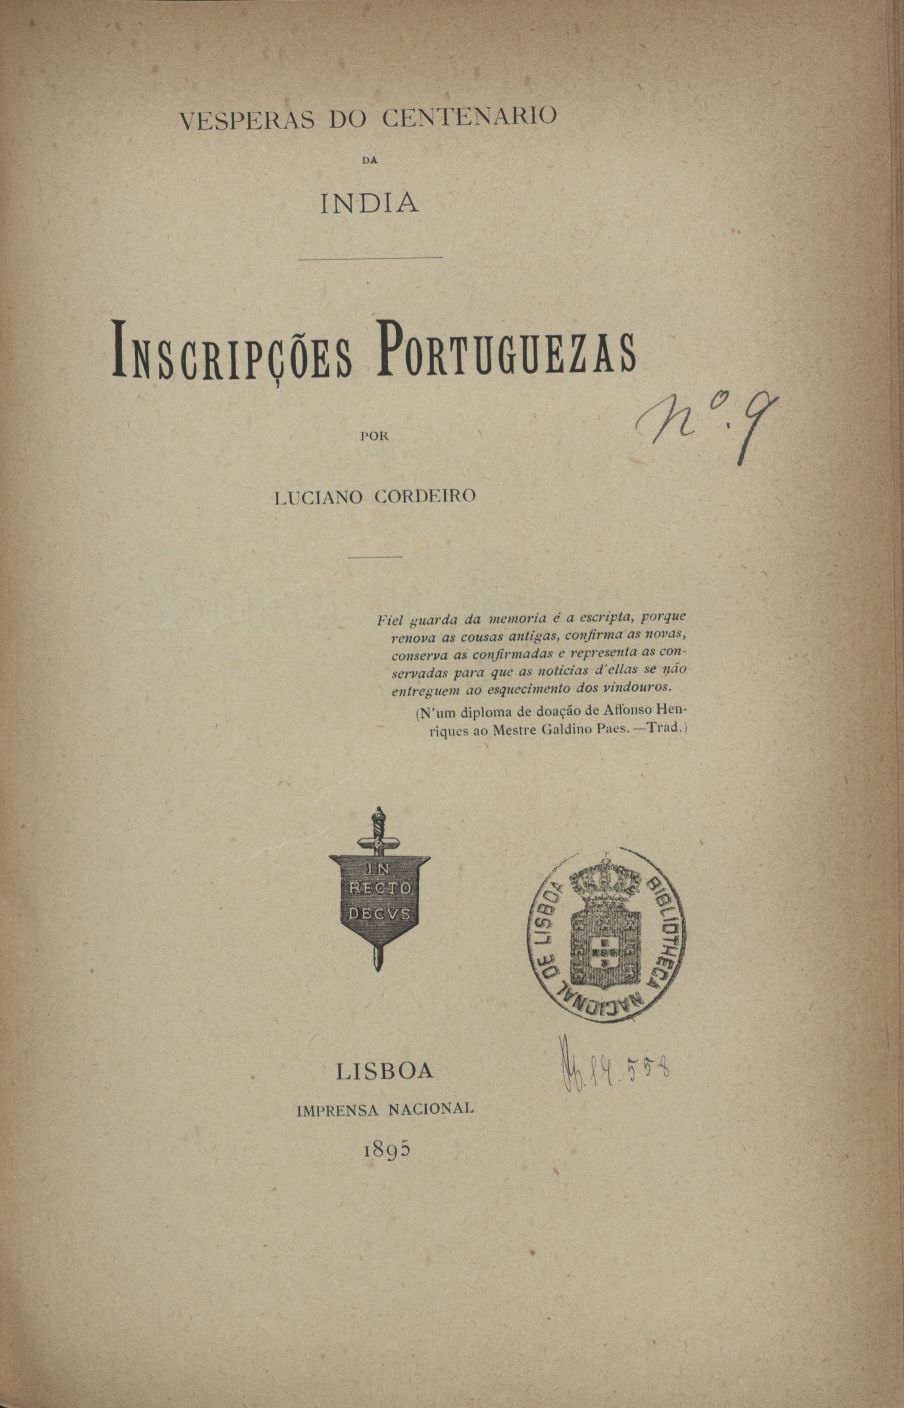 Cover of Inscripções portuguezas / por Luciano Cordeiro. - Lisboa : Impr. Nacional, 1895. - 50 p. ; 25 cm